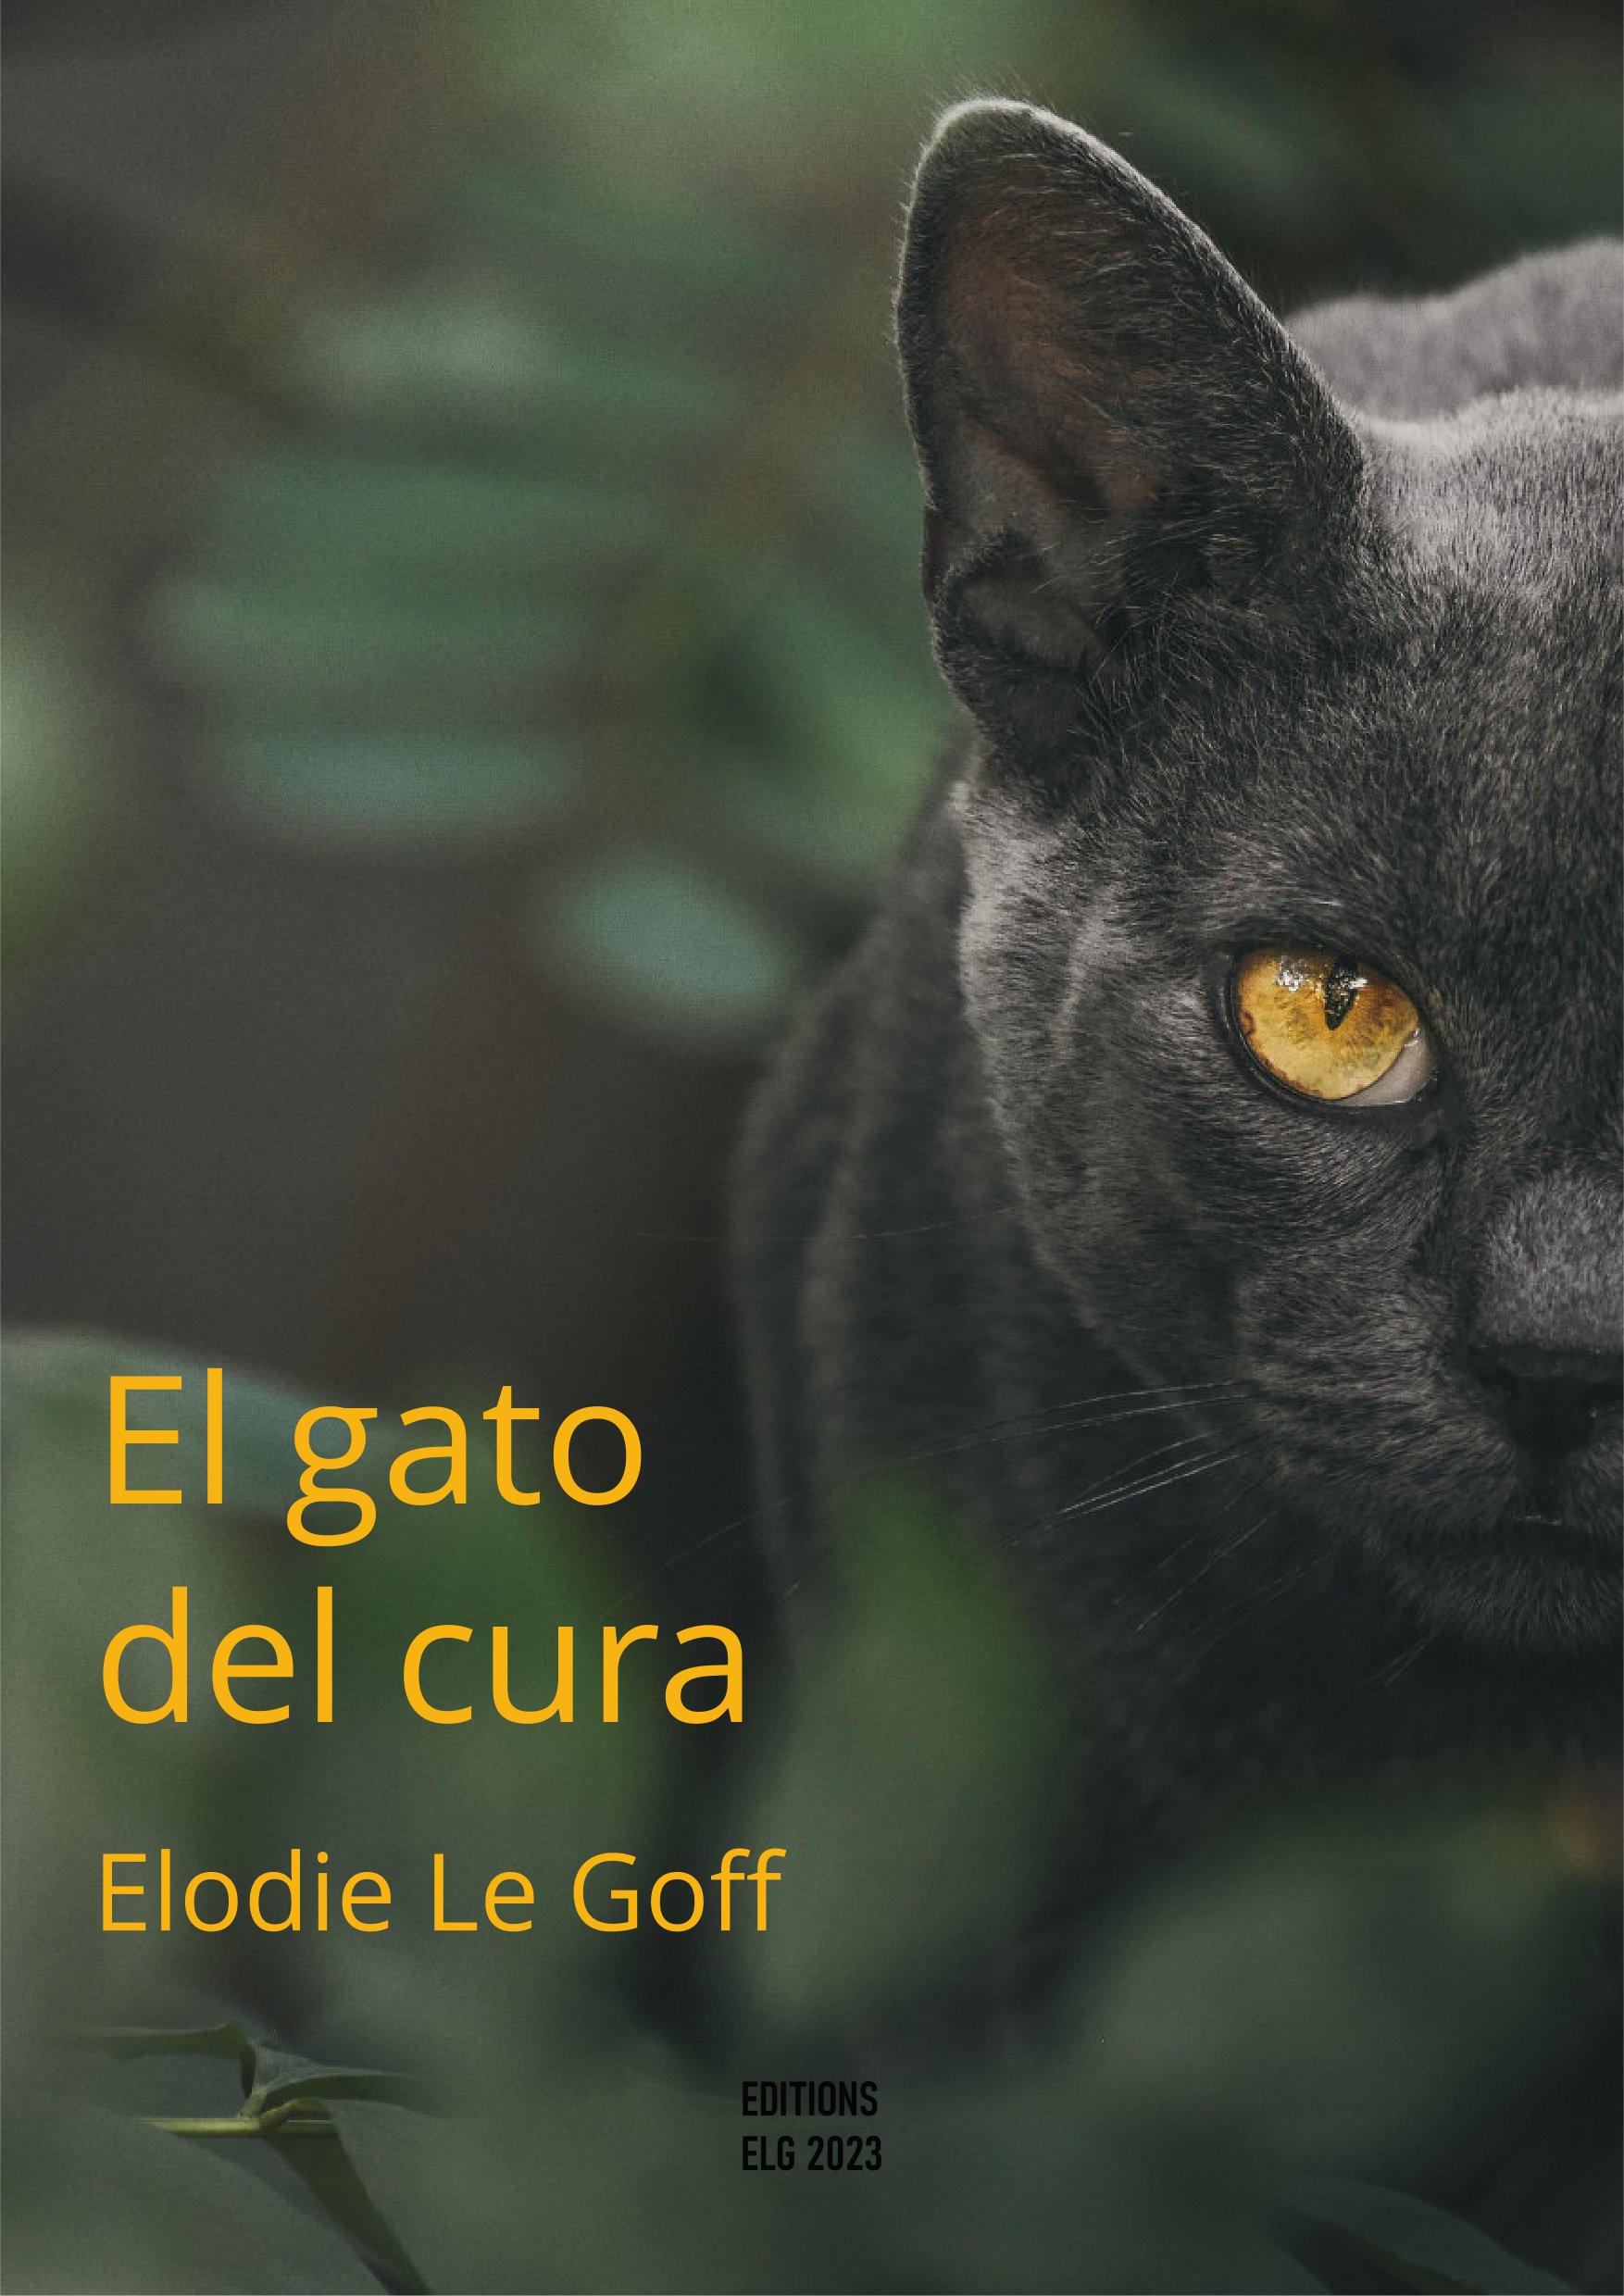 El gato del cura - Elodie LE GOFF